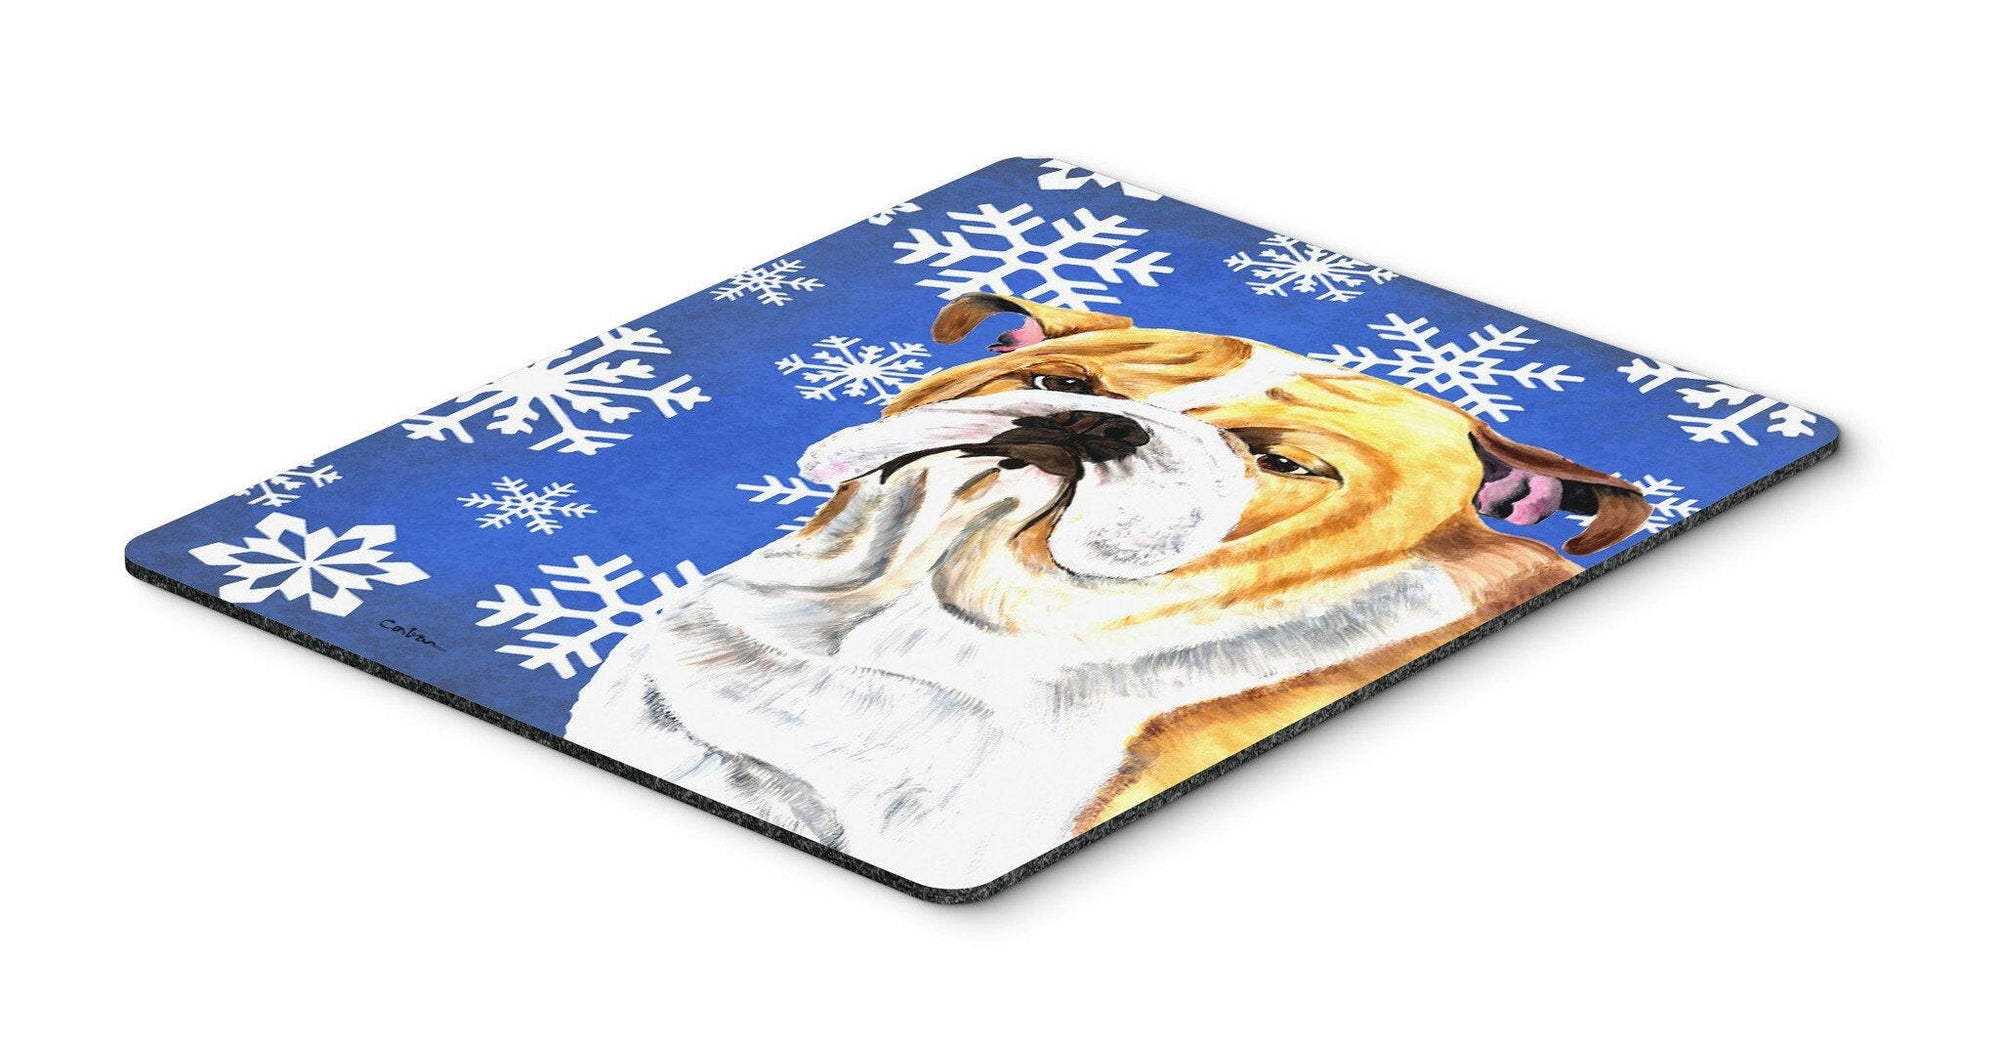 Bulldog English Winter Snowflakes Holiday Mouse Pad, Hot Pad or Trivet by Caroline's Treasures